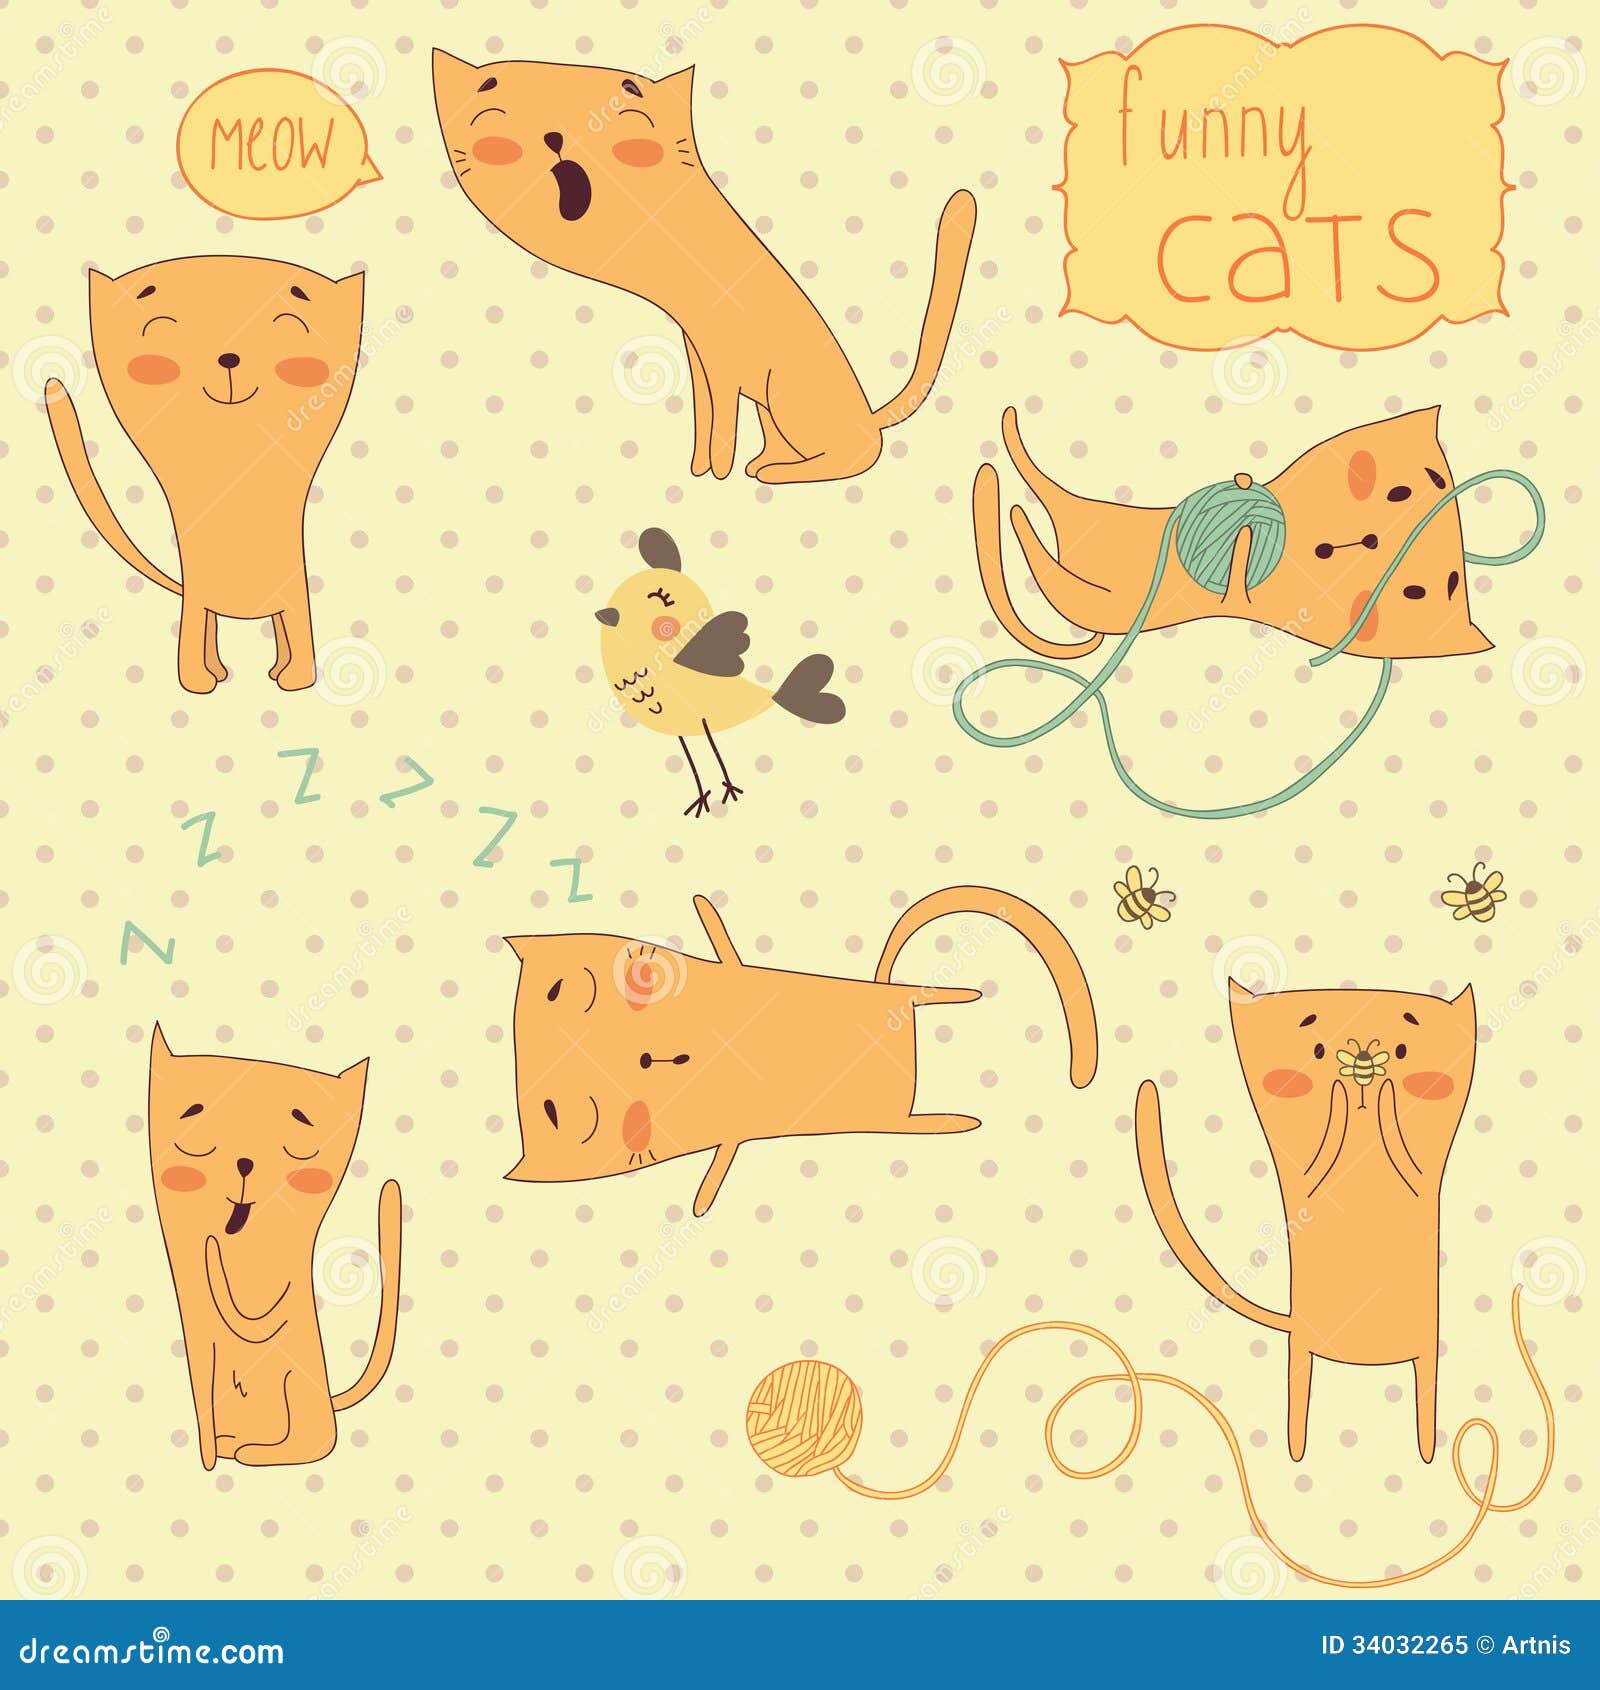 Set Of Funny Cartoon Cats. Royalty Free Stock Photo - Image: 34032265